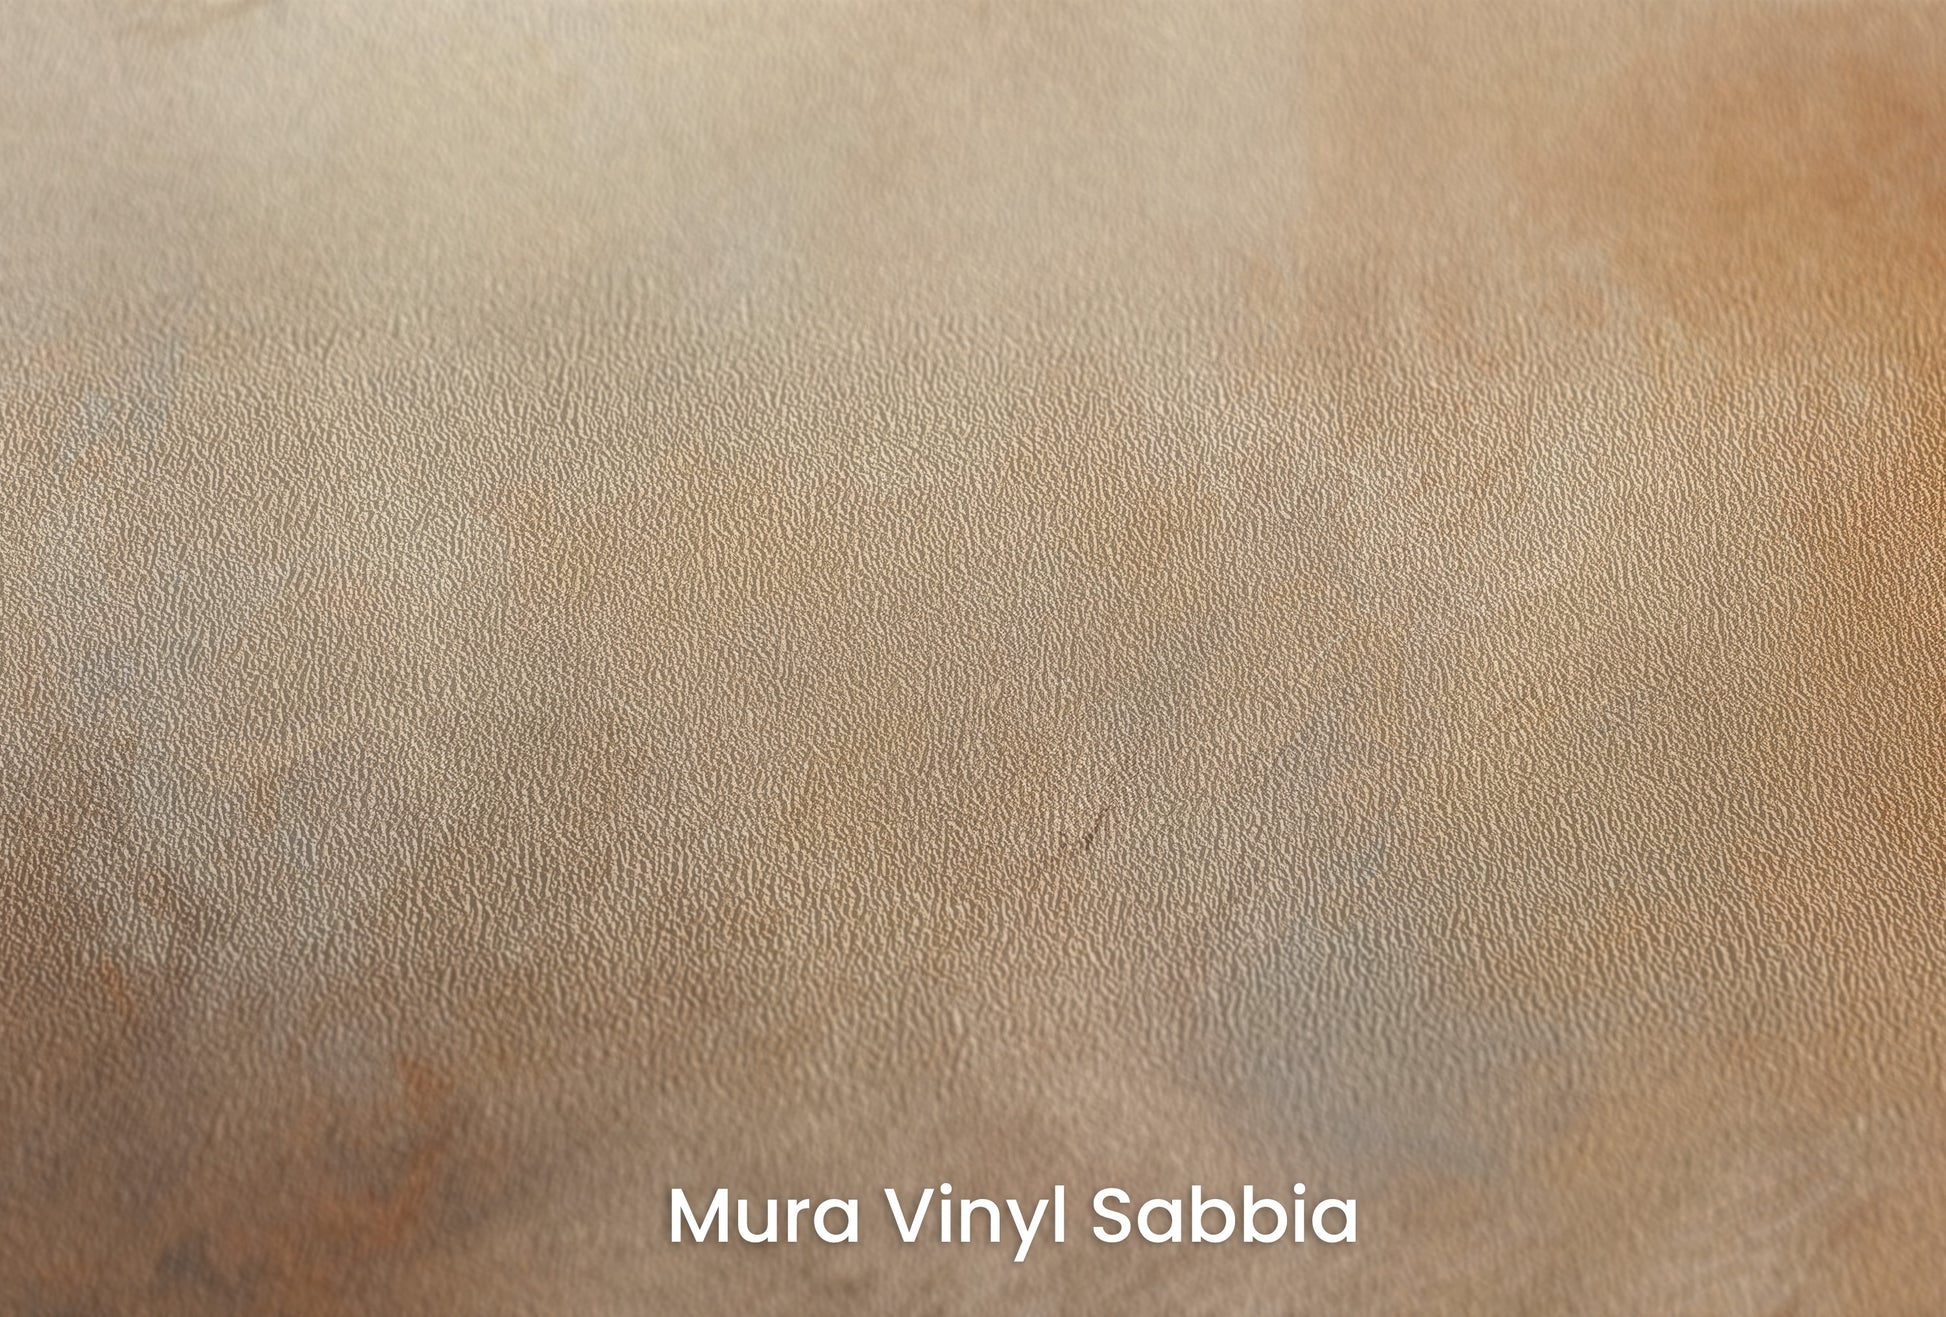 Zbliżenie na artystyczną fototapetę o nazwie DAWN'S TRANQUIL EMBRACE na podłożu Mura Vinyl Sabbia struktura grubego ziarna piasku.